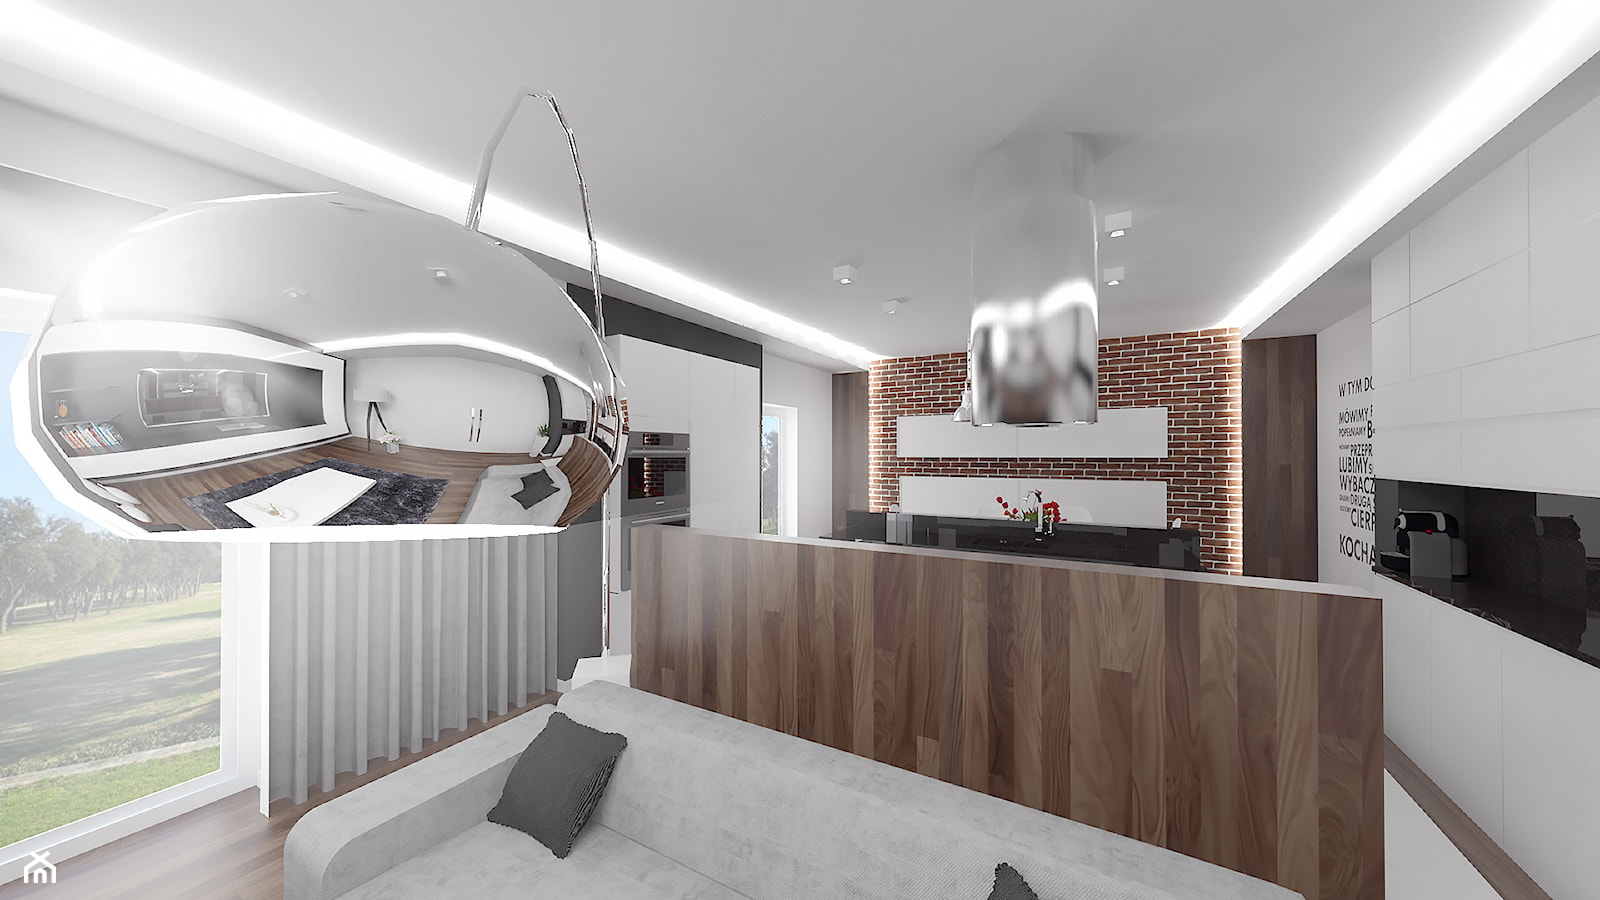 Projekt konkursowy firmy Teka pt: "Kuchnia sercem domu" - Salon, styl nowoczesny - zdjęcie od VERY Interior Design - Projektowanie Wnętrz - Homebook